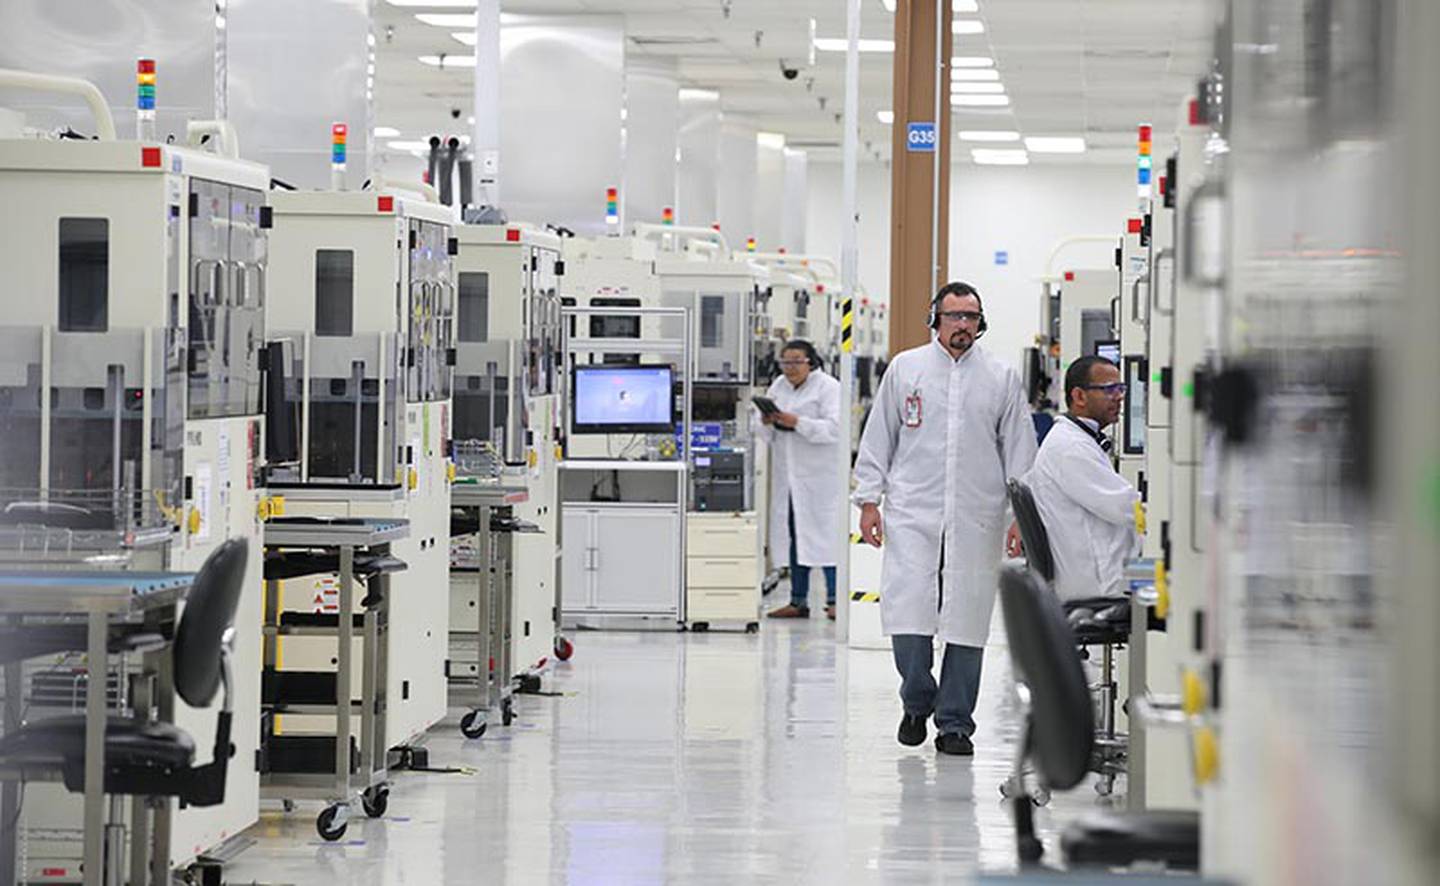 Intel costa rica. Коста Рика завод Интел. Intel лаборатория. Малайзия завод. Завод Intel в Коста Рике.